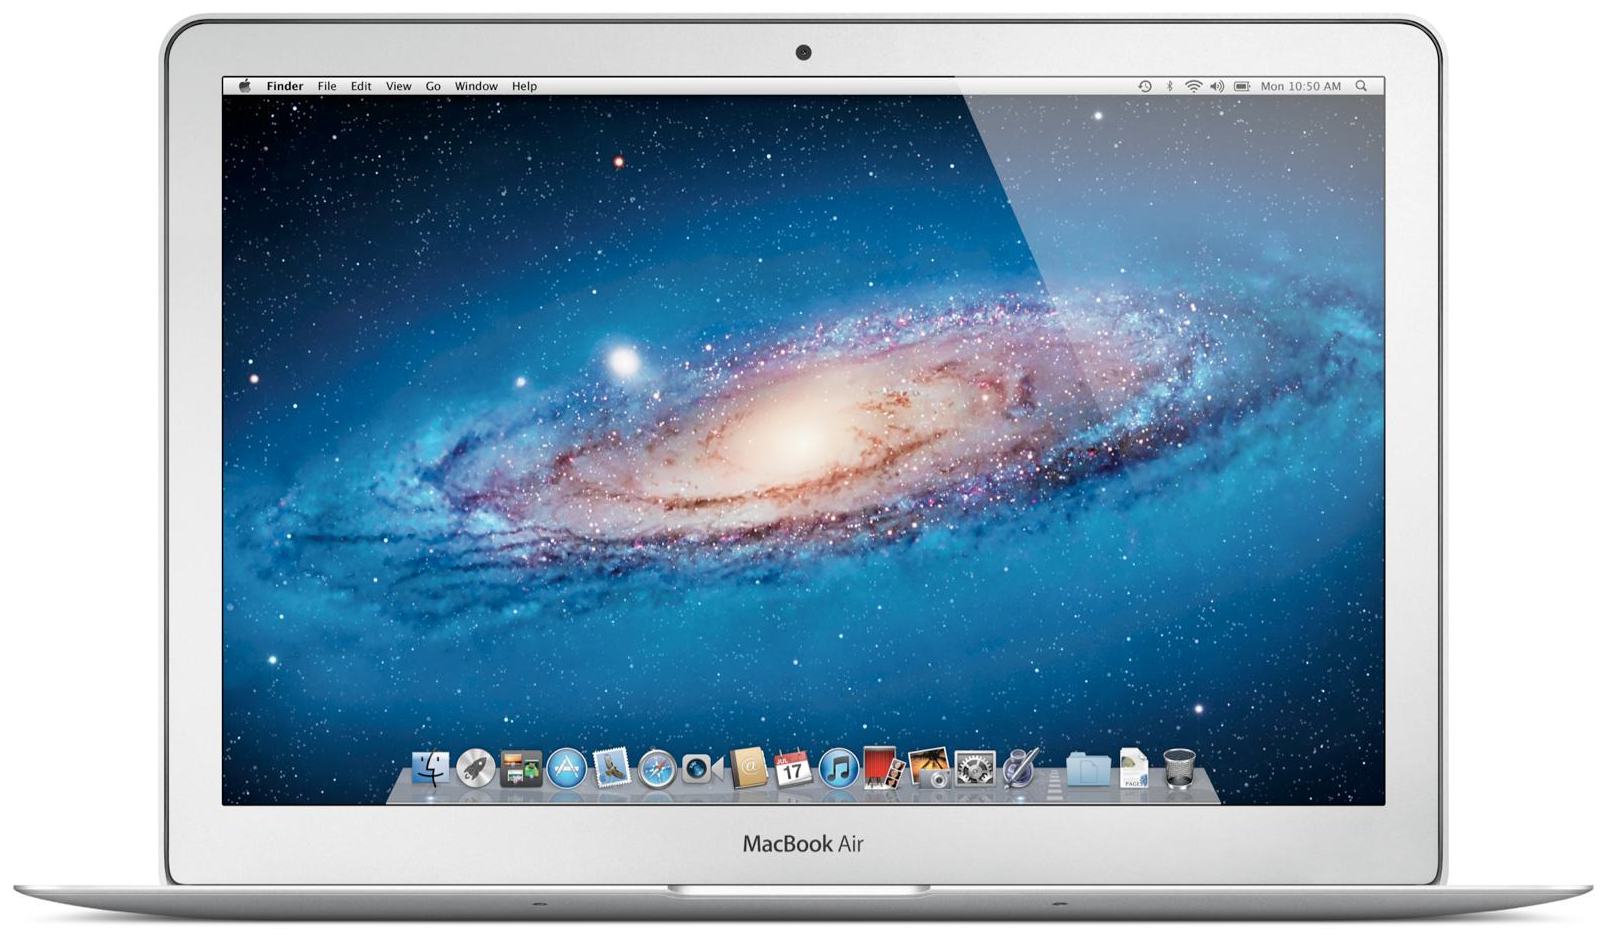 Ноутбук Apple Macbook Купить В Москве